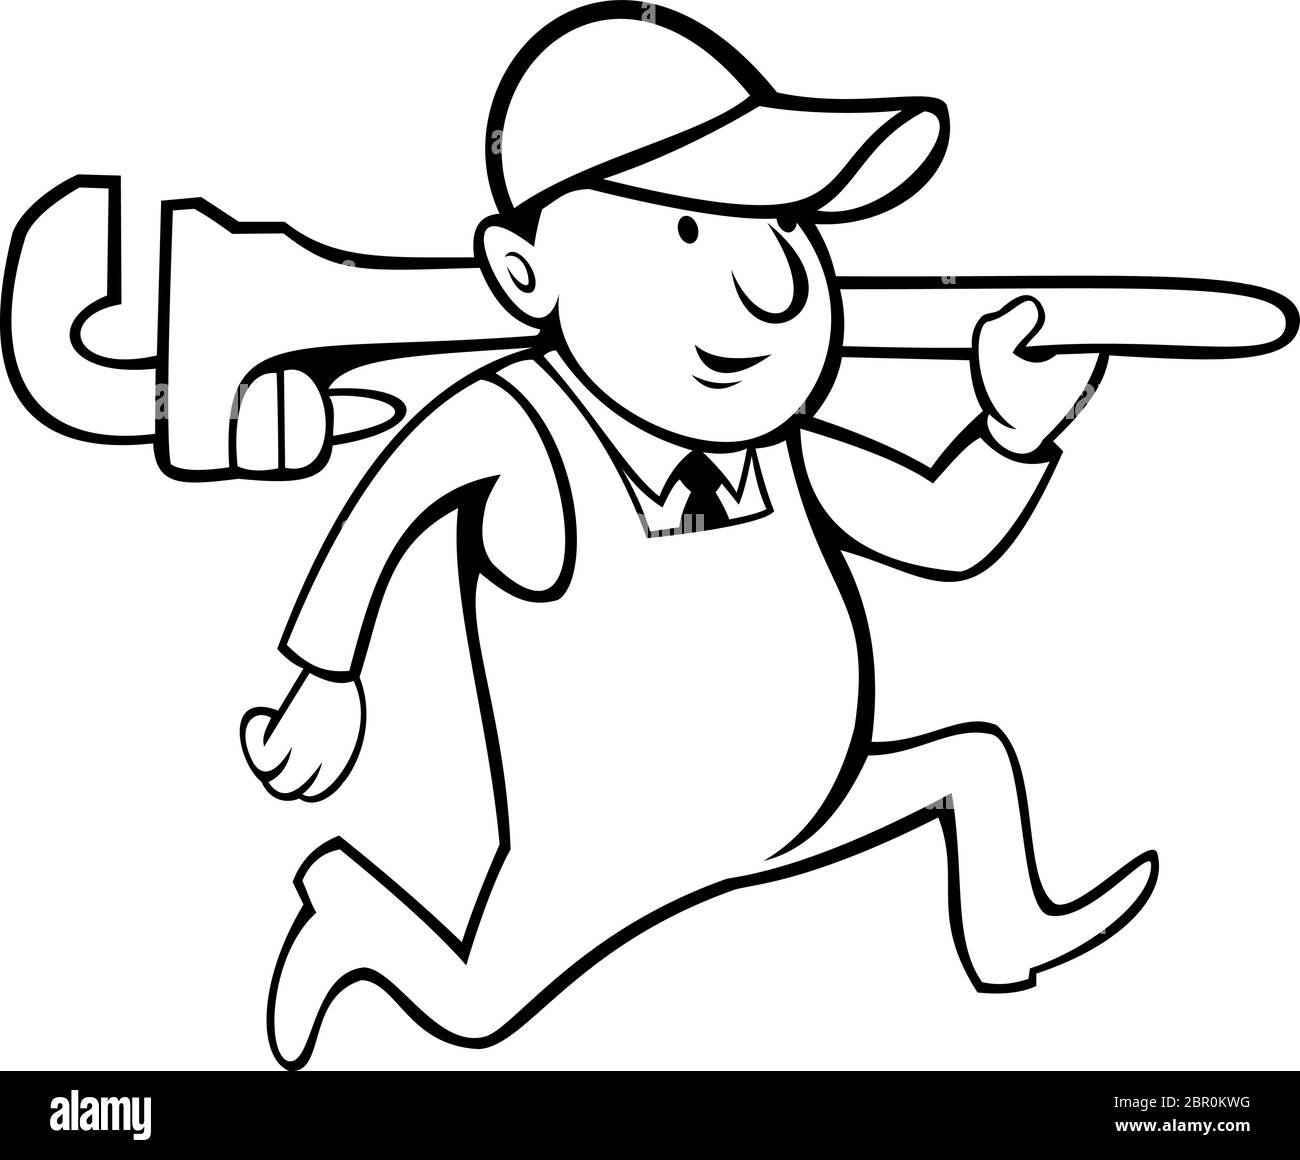 Illustration de style caricature d'un plombier ou d'un homme de main tenant une clé à singe sur fond blanc isolé fait en noir et blanc. Illustration de Vecteur